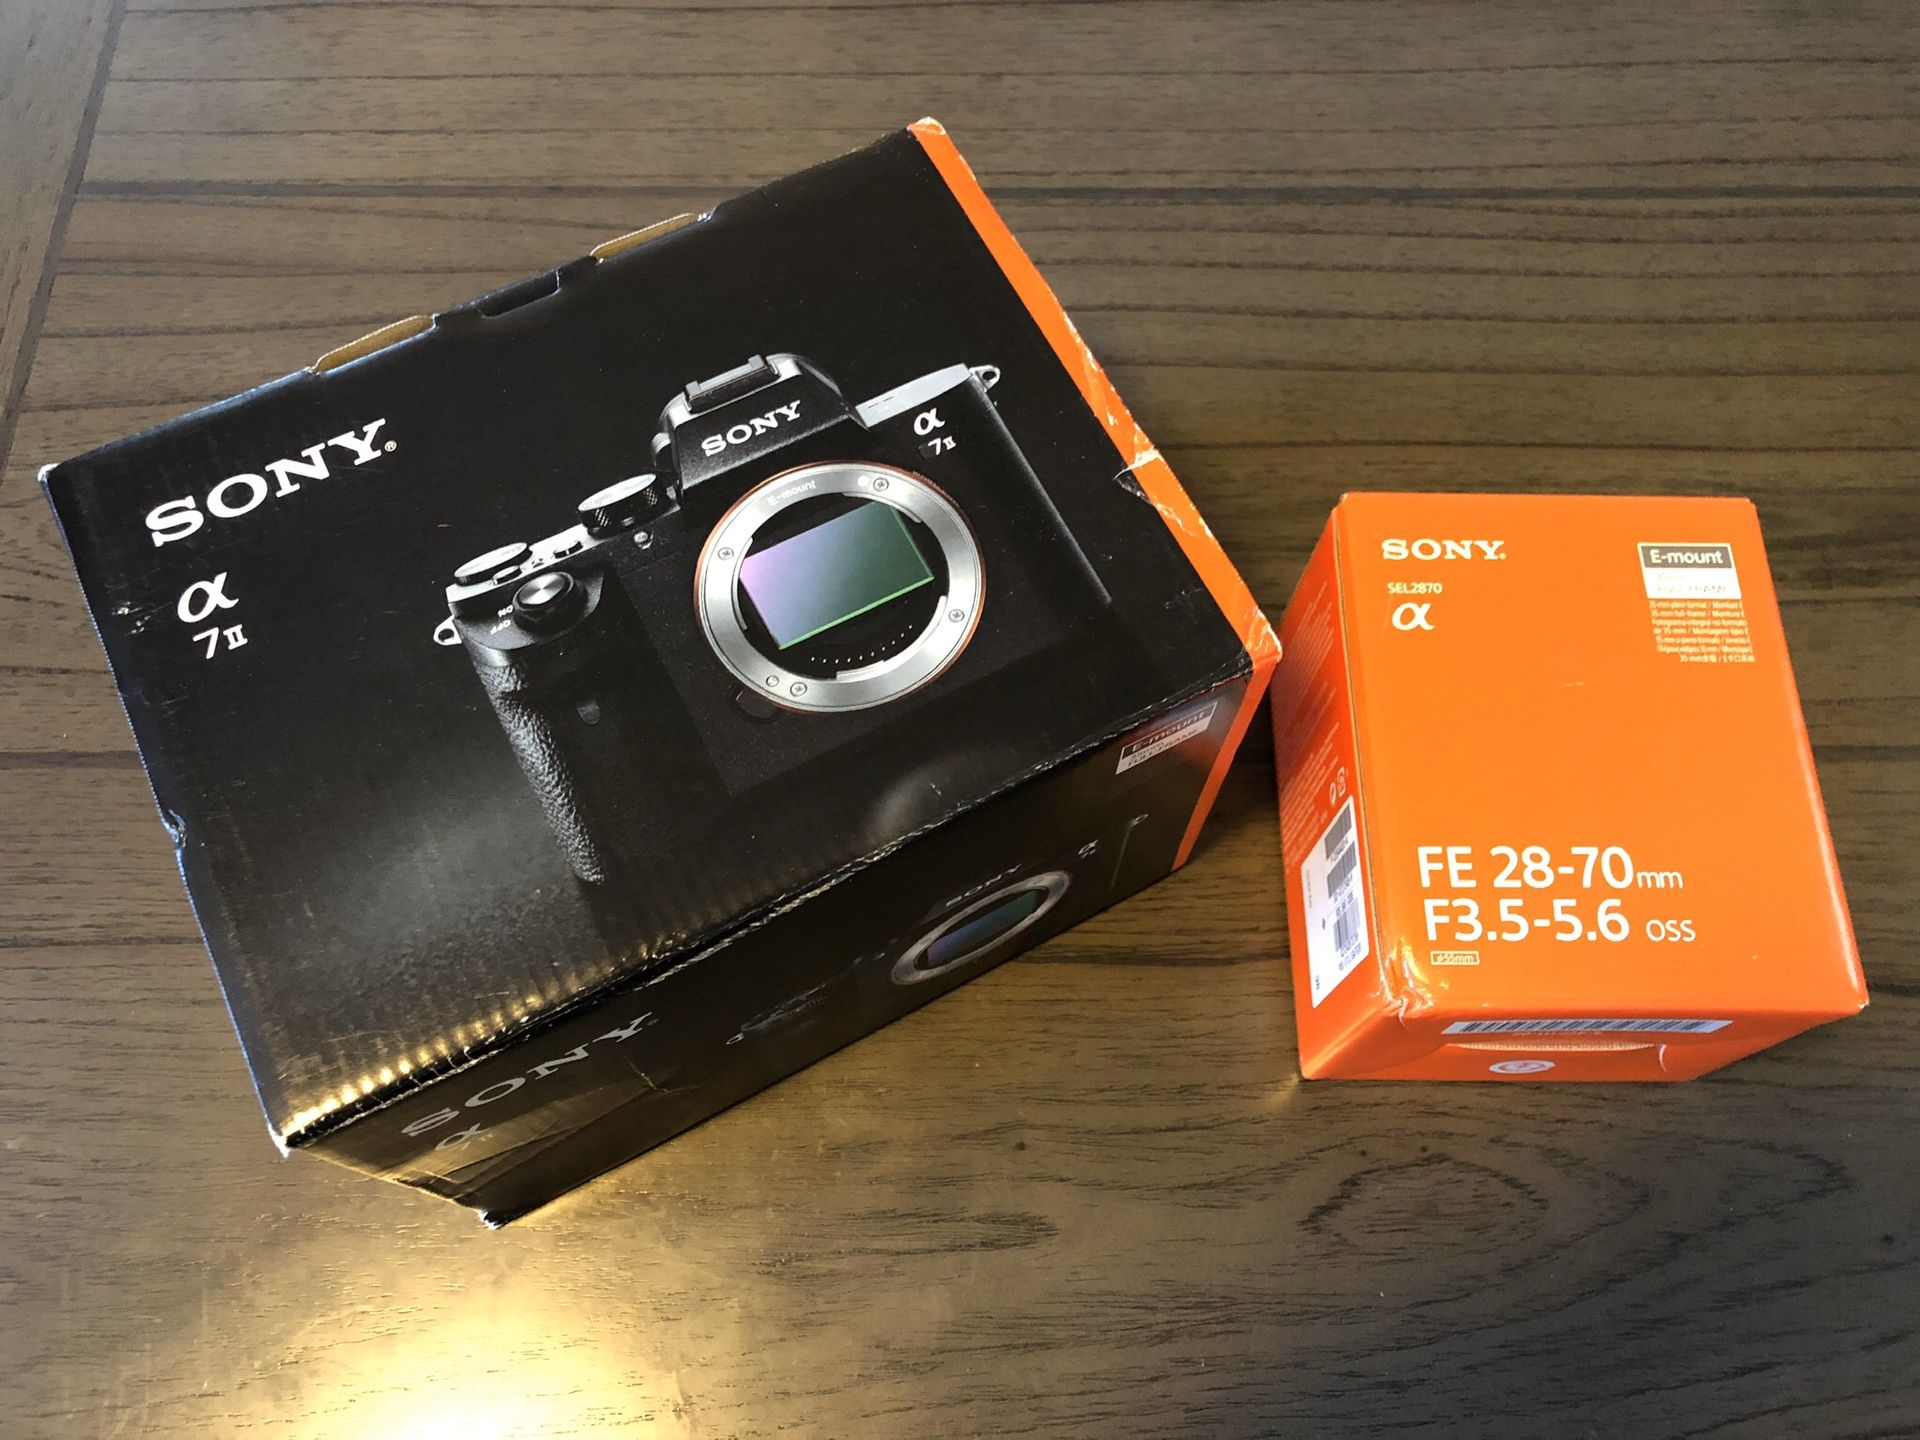 Sony Alpha a7ii Mirrorless Digital Camera w/ 28-70mm F3.5-5.6 Lens